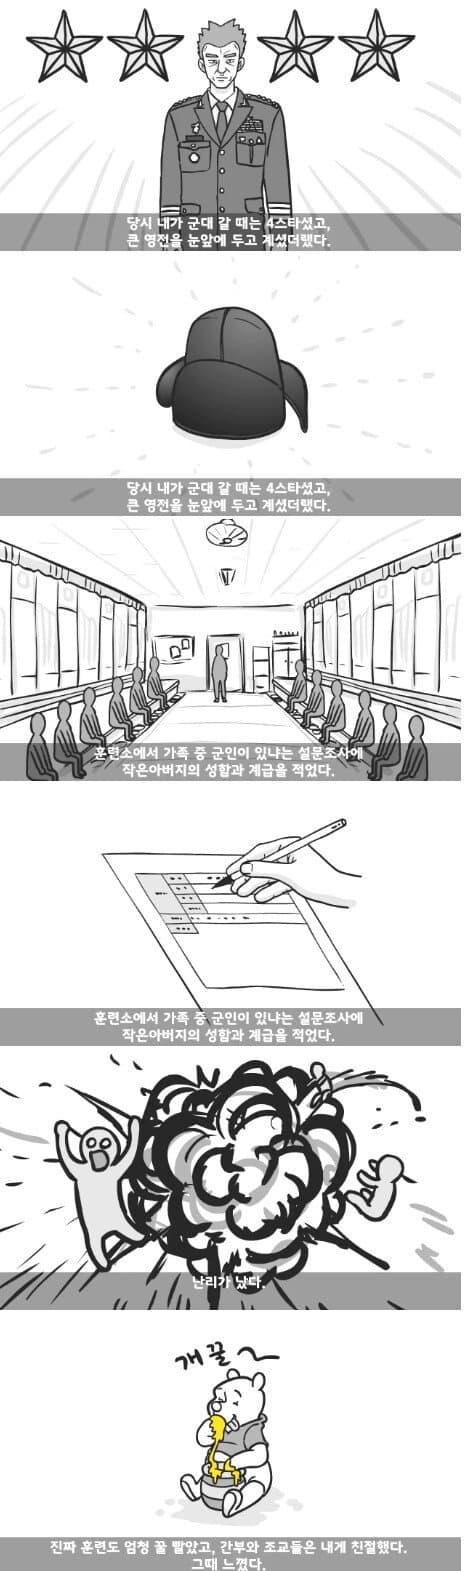 군대 4스타인 만화 3.jpg